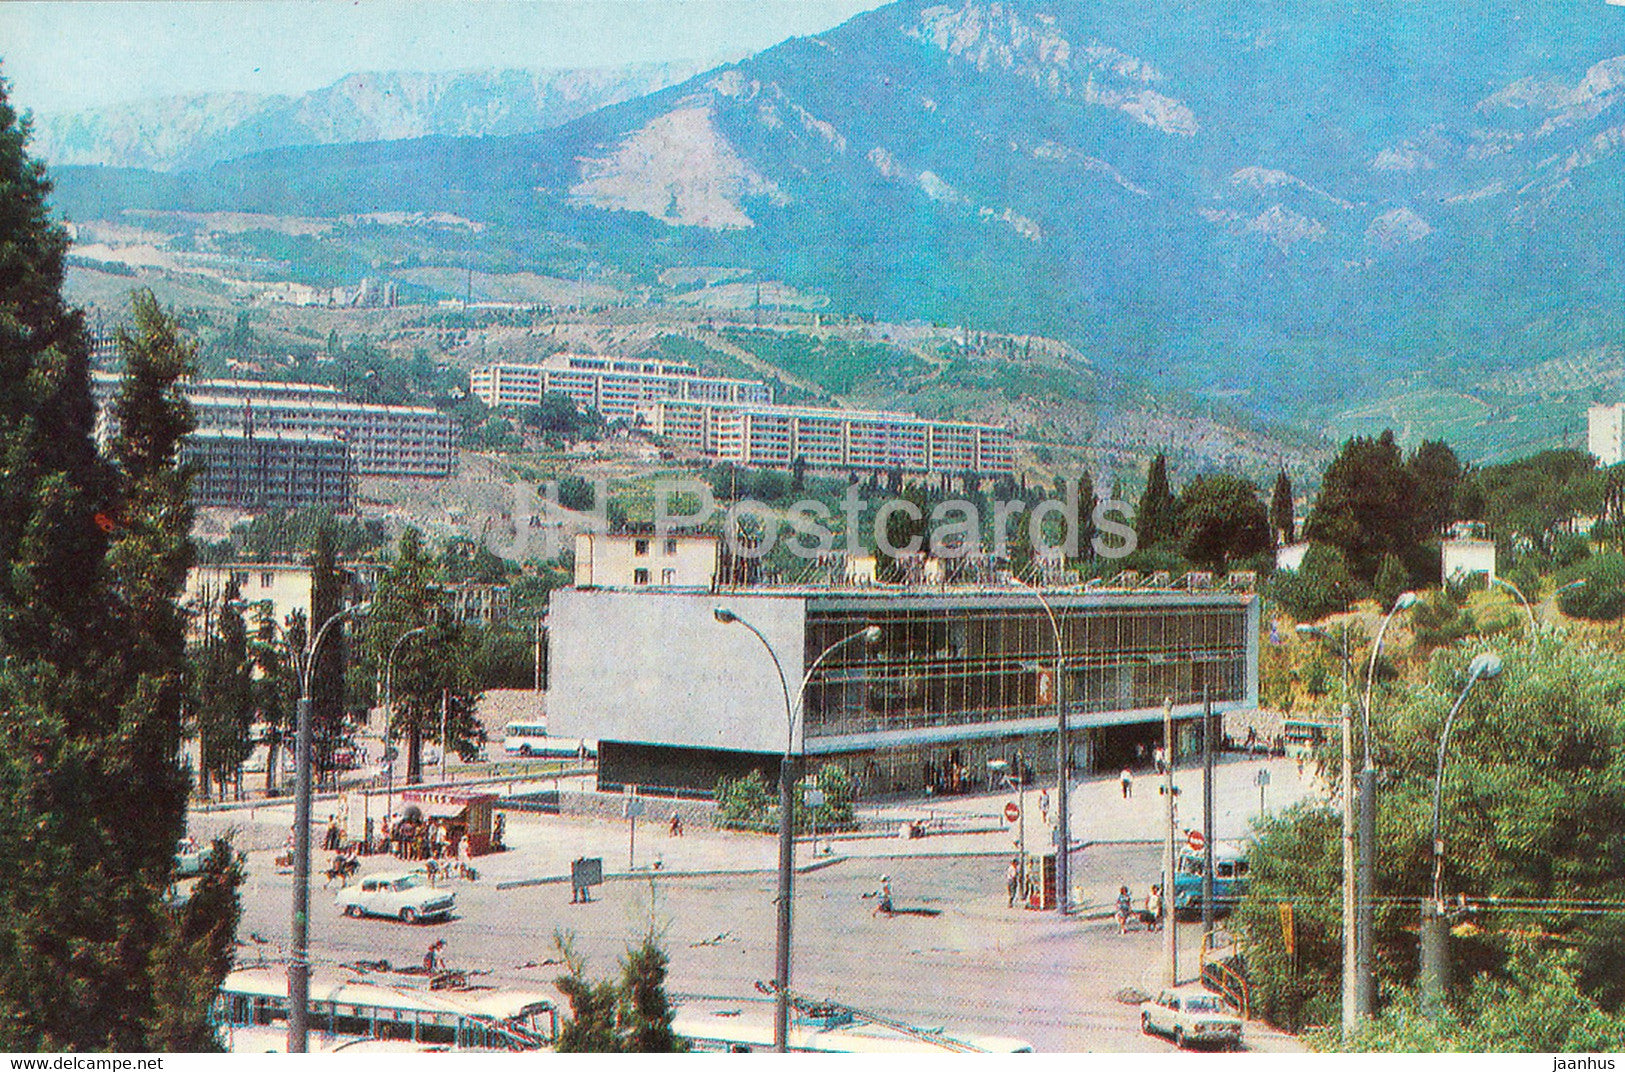 Yalta - Crimea - bus station - 1976 - Ukraine USSR - unused - JH Postcards